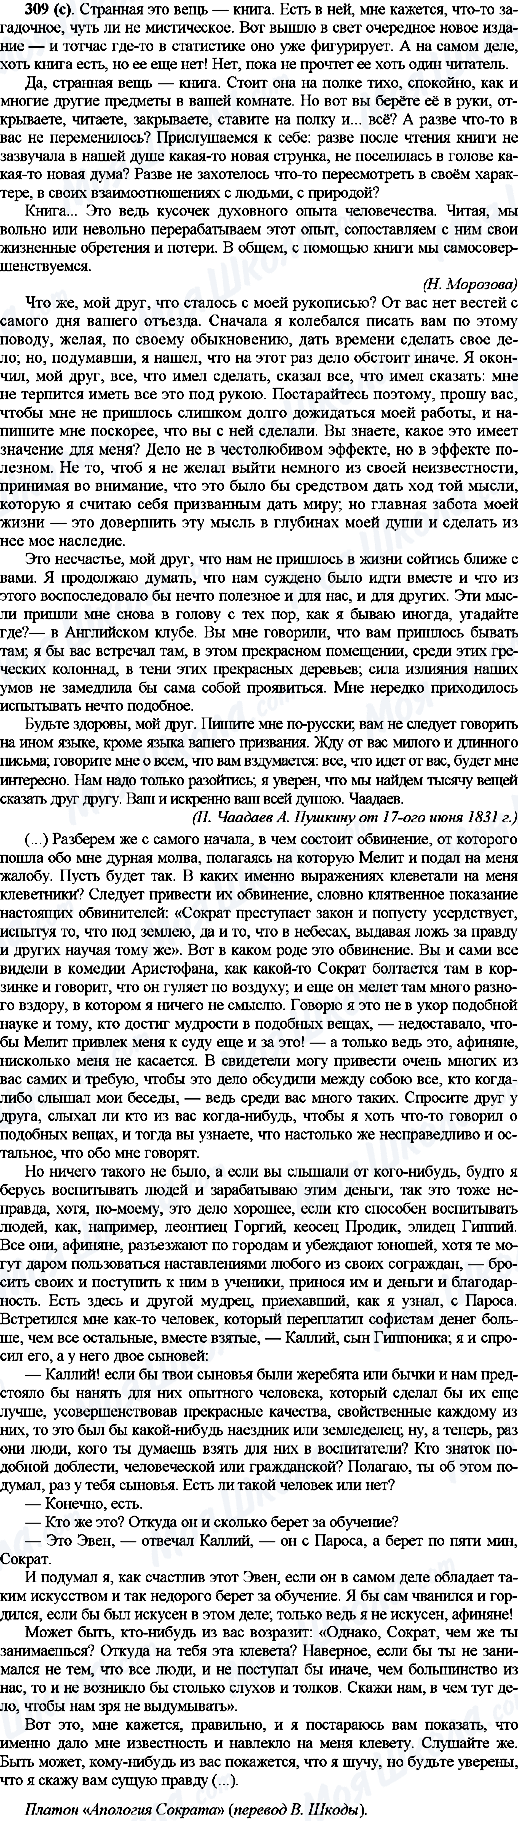 ГДЗ Російська мова 10 клас сторінка 309(с)